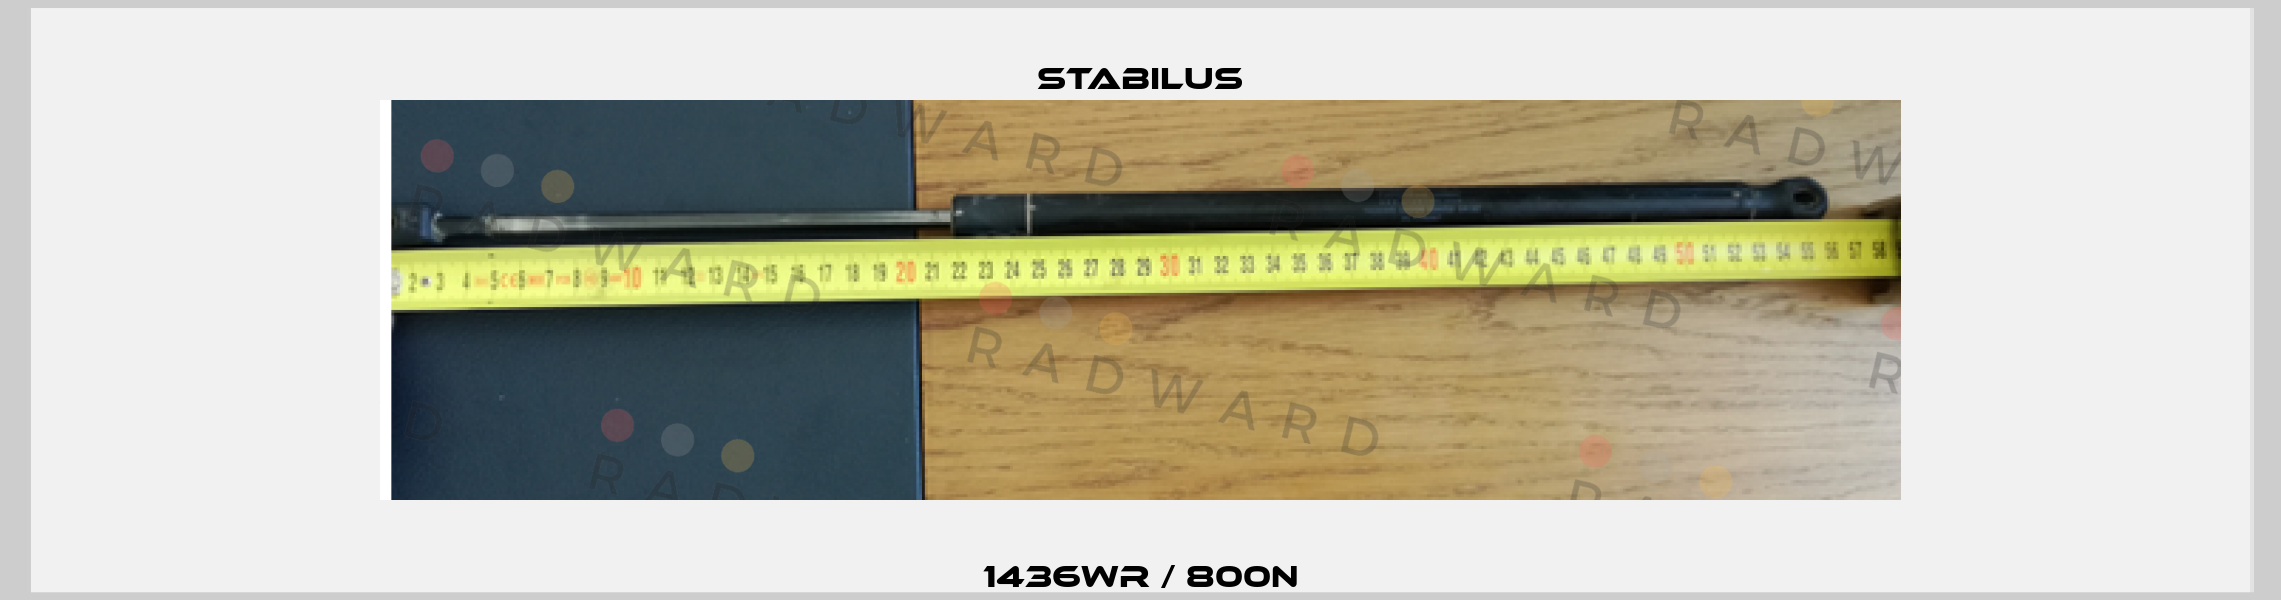 1436WR / 800N Stabilus